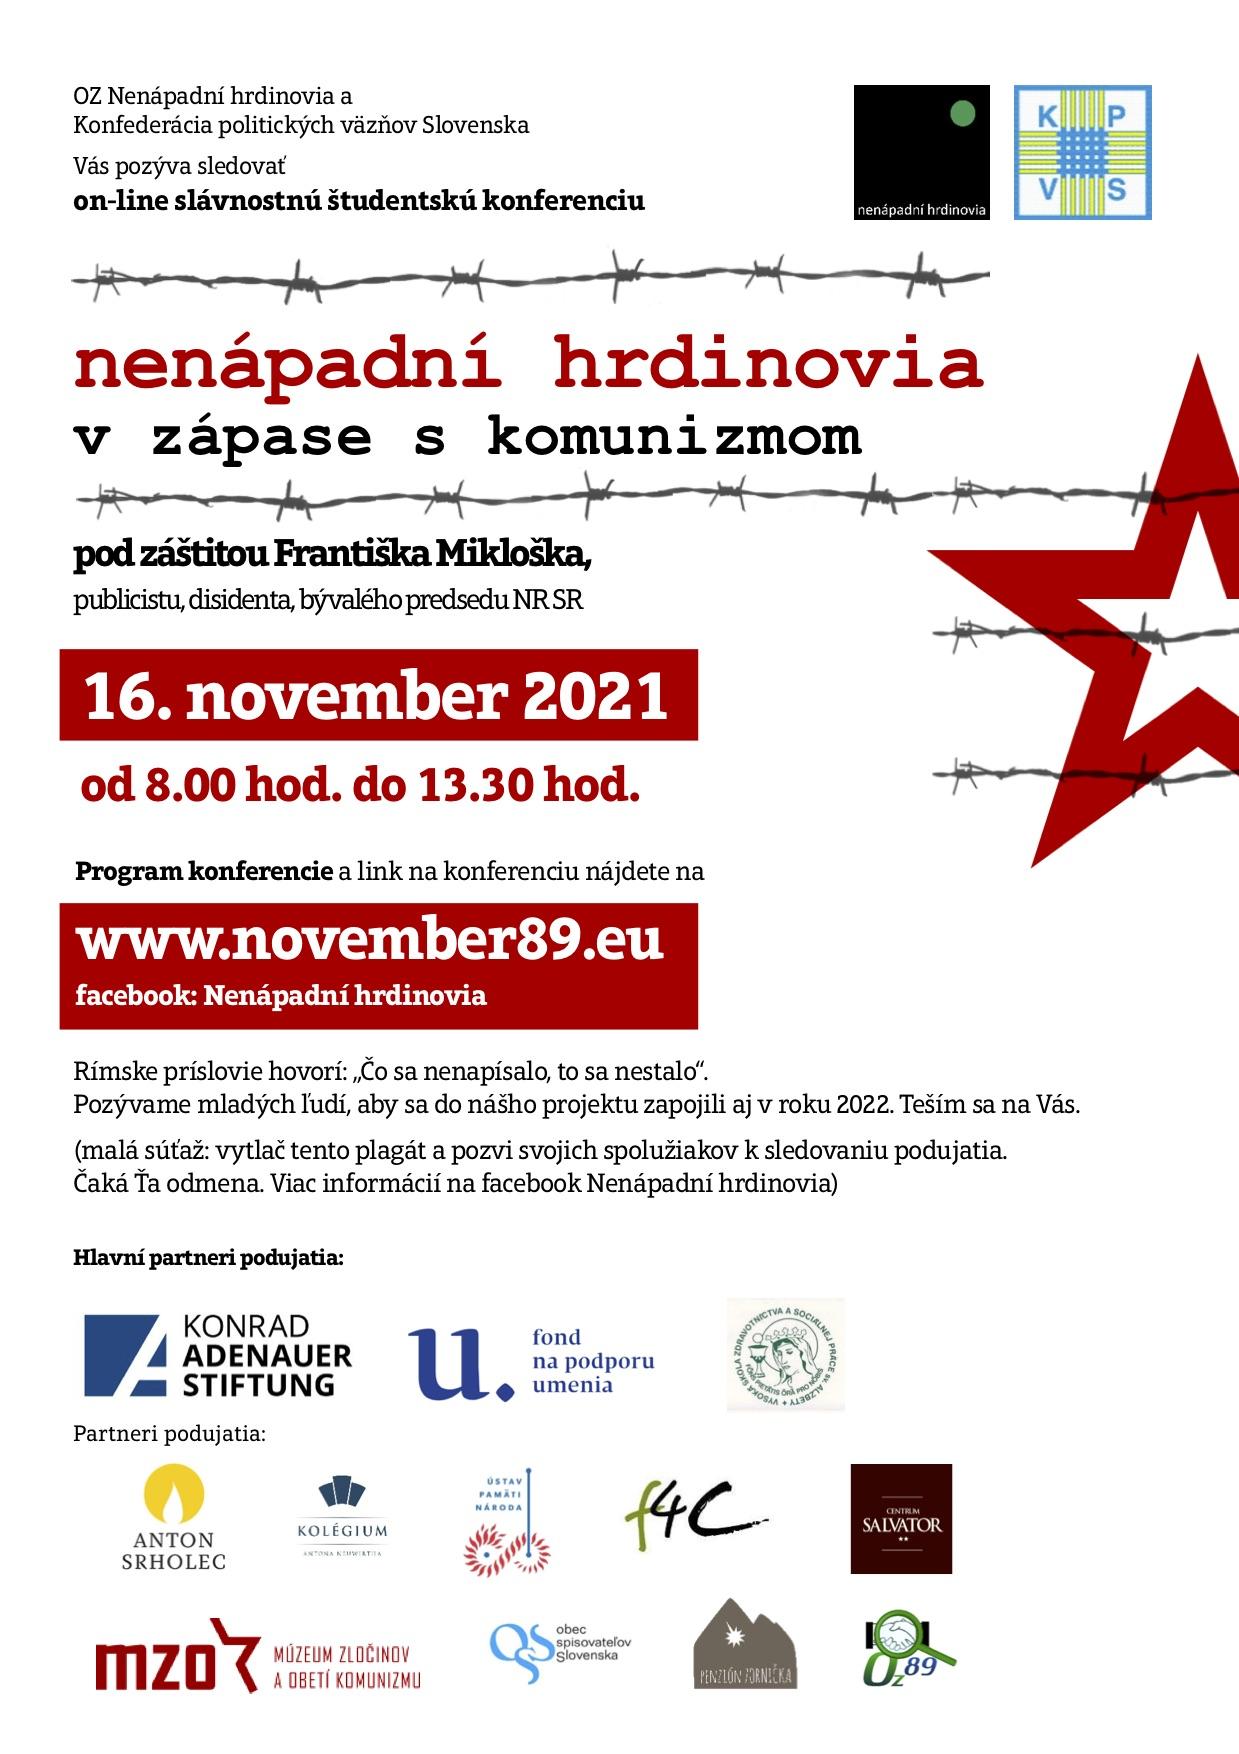 Bratislava, konferencia, Nenapadni hrdinovia, plagat